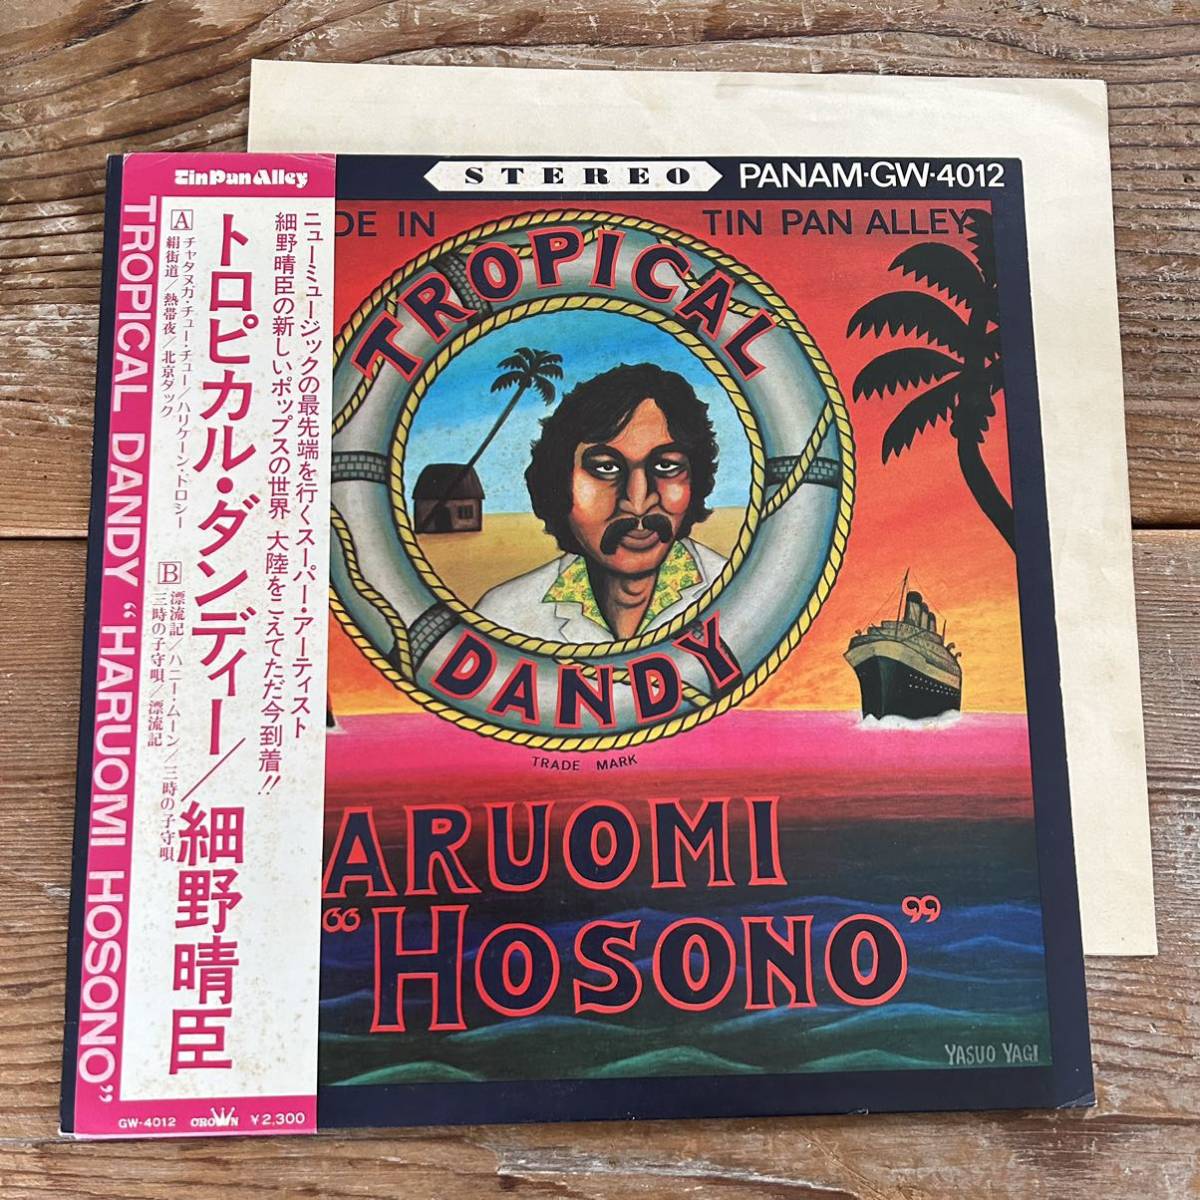 オリジナル盤 LP 細野晴臣 トロピカル ダンディー 帯 和モノ TIN PAN